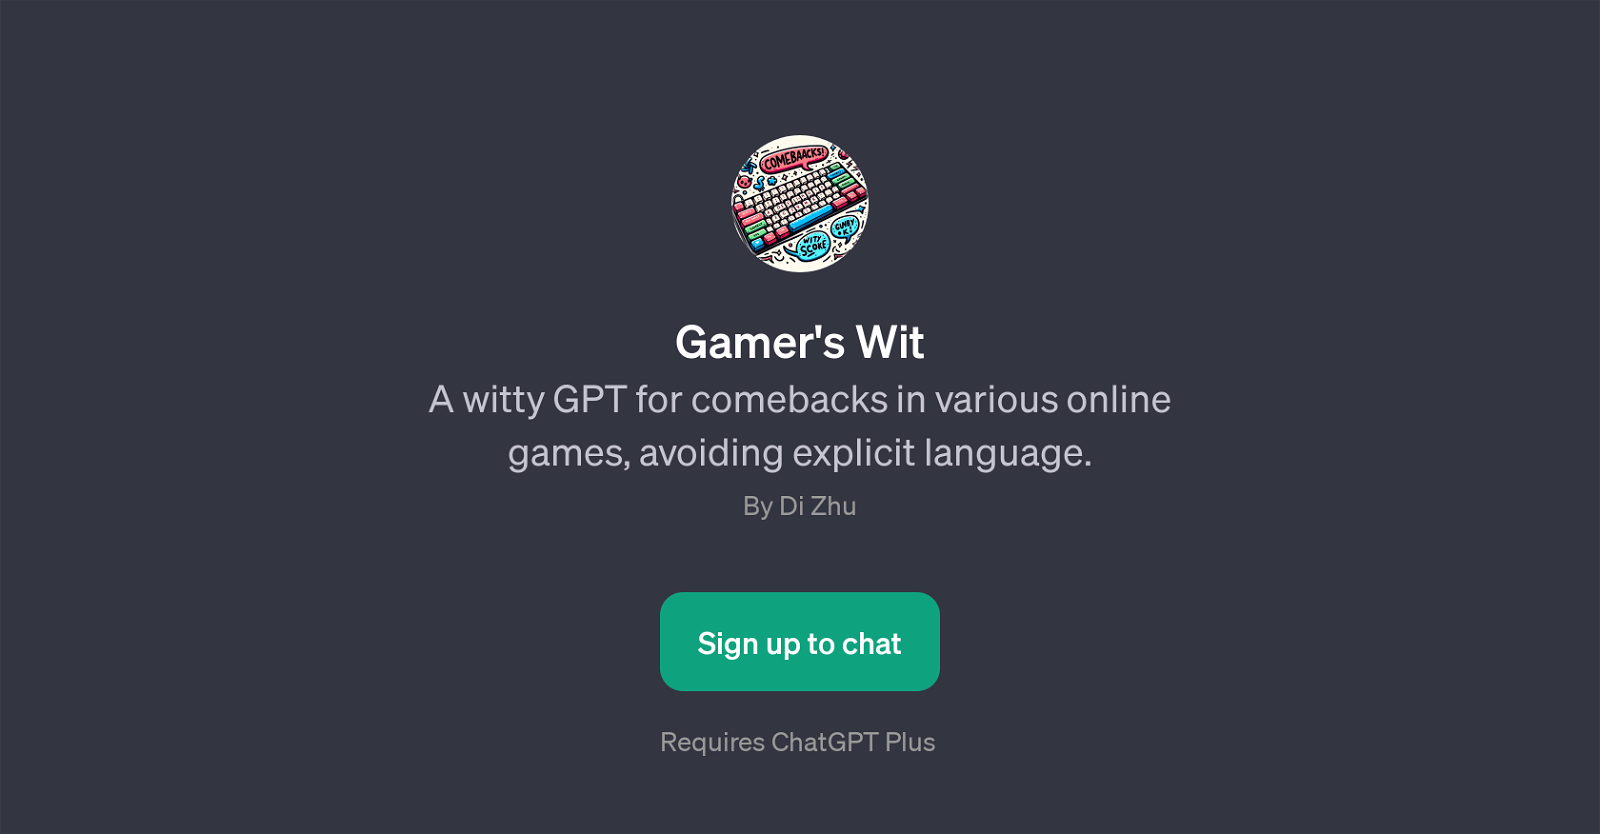 Gamer's Wit website